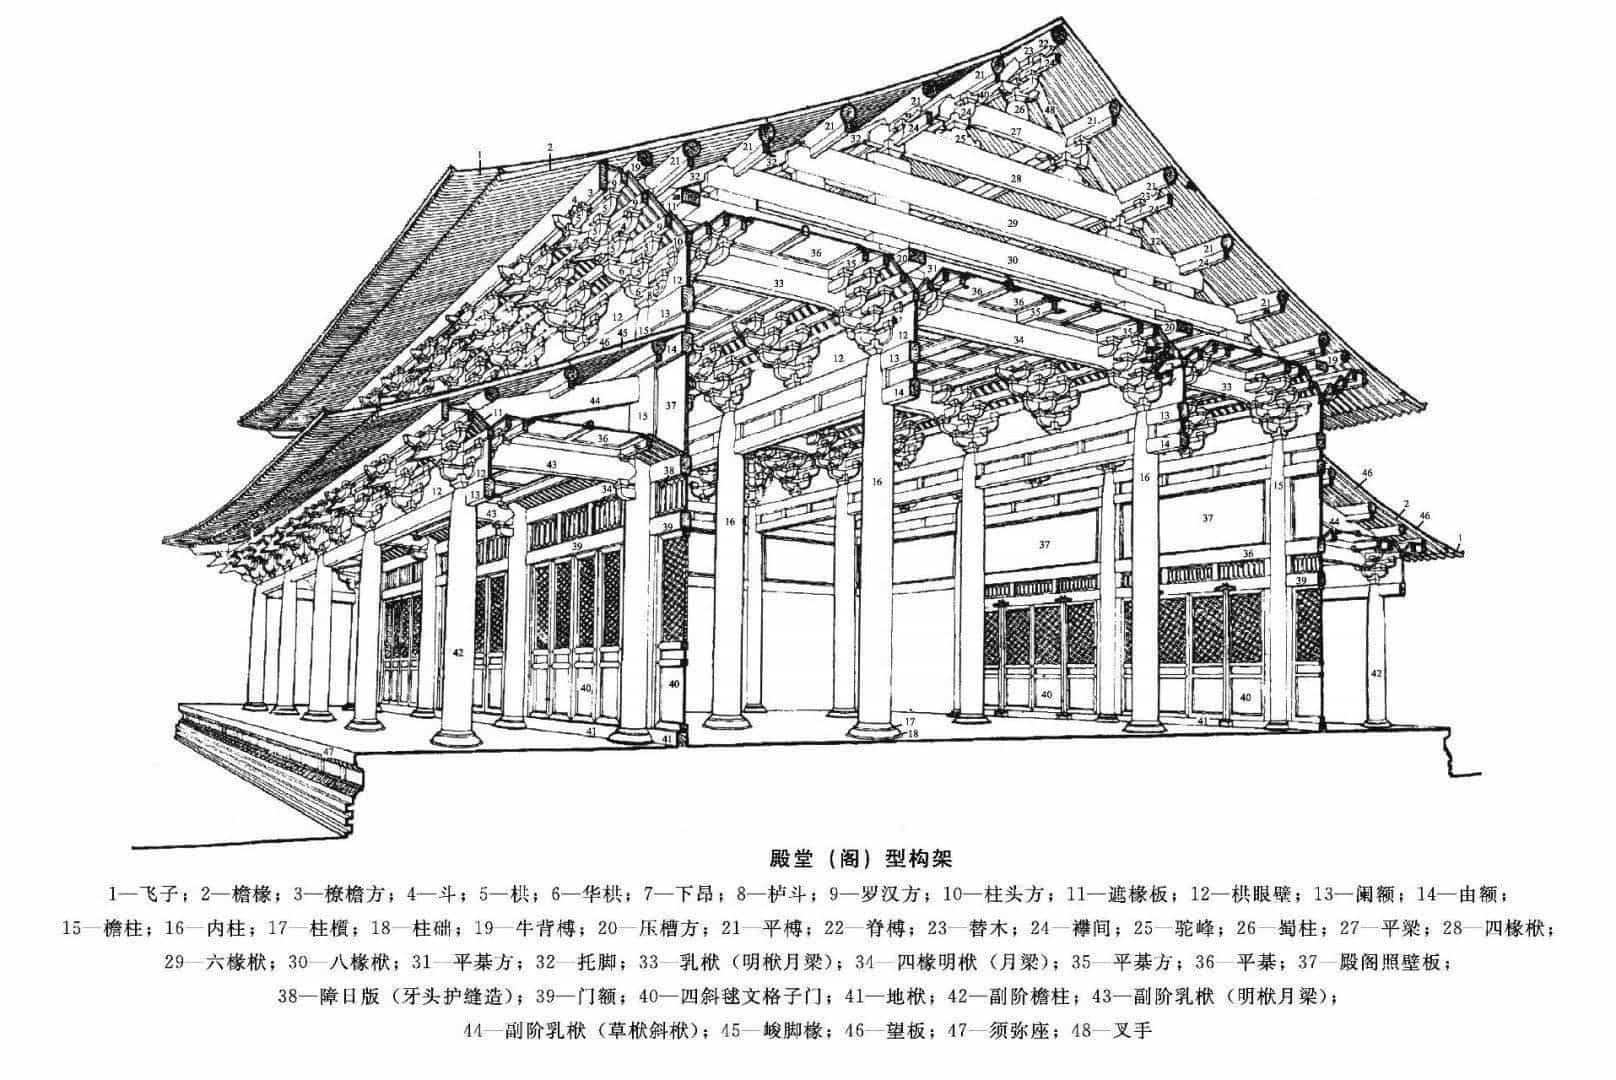 木构建筑按照其结构功能大致可以分为:殿堂,厅堂,余屋,亭榭.